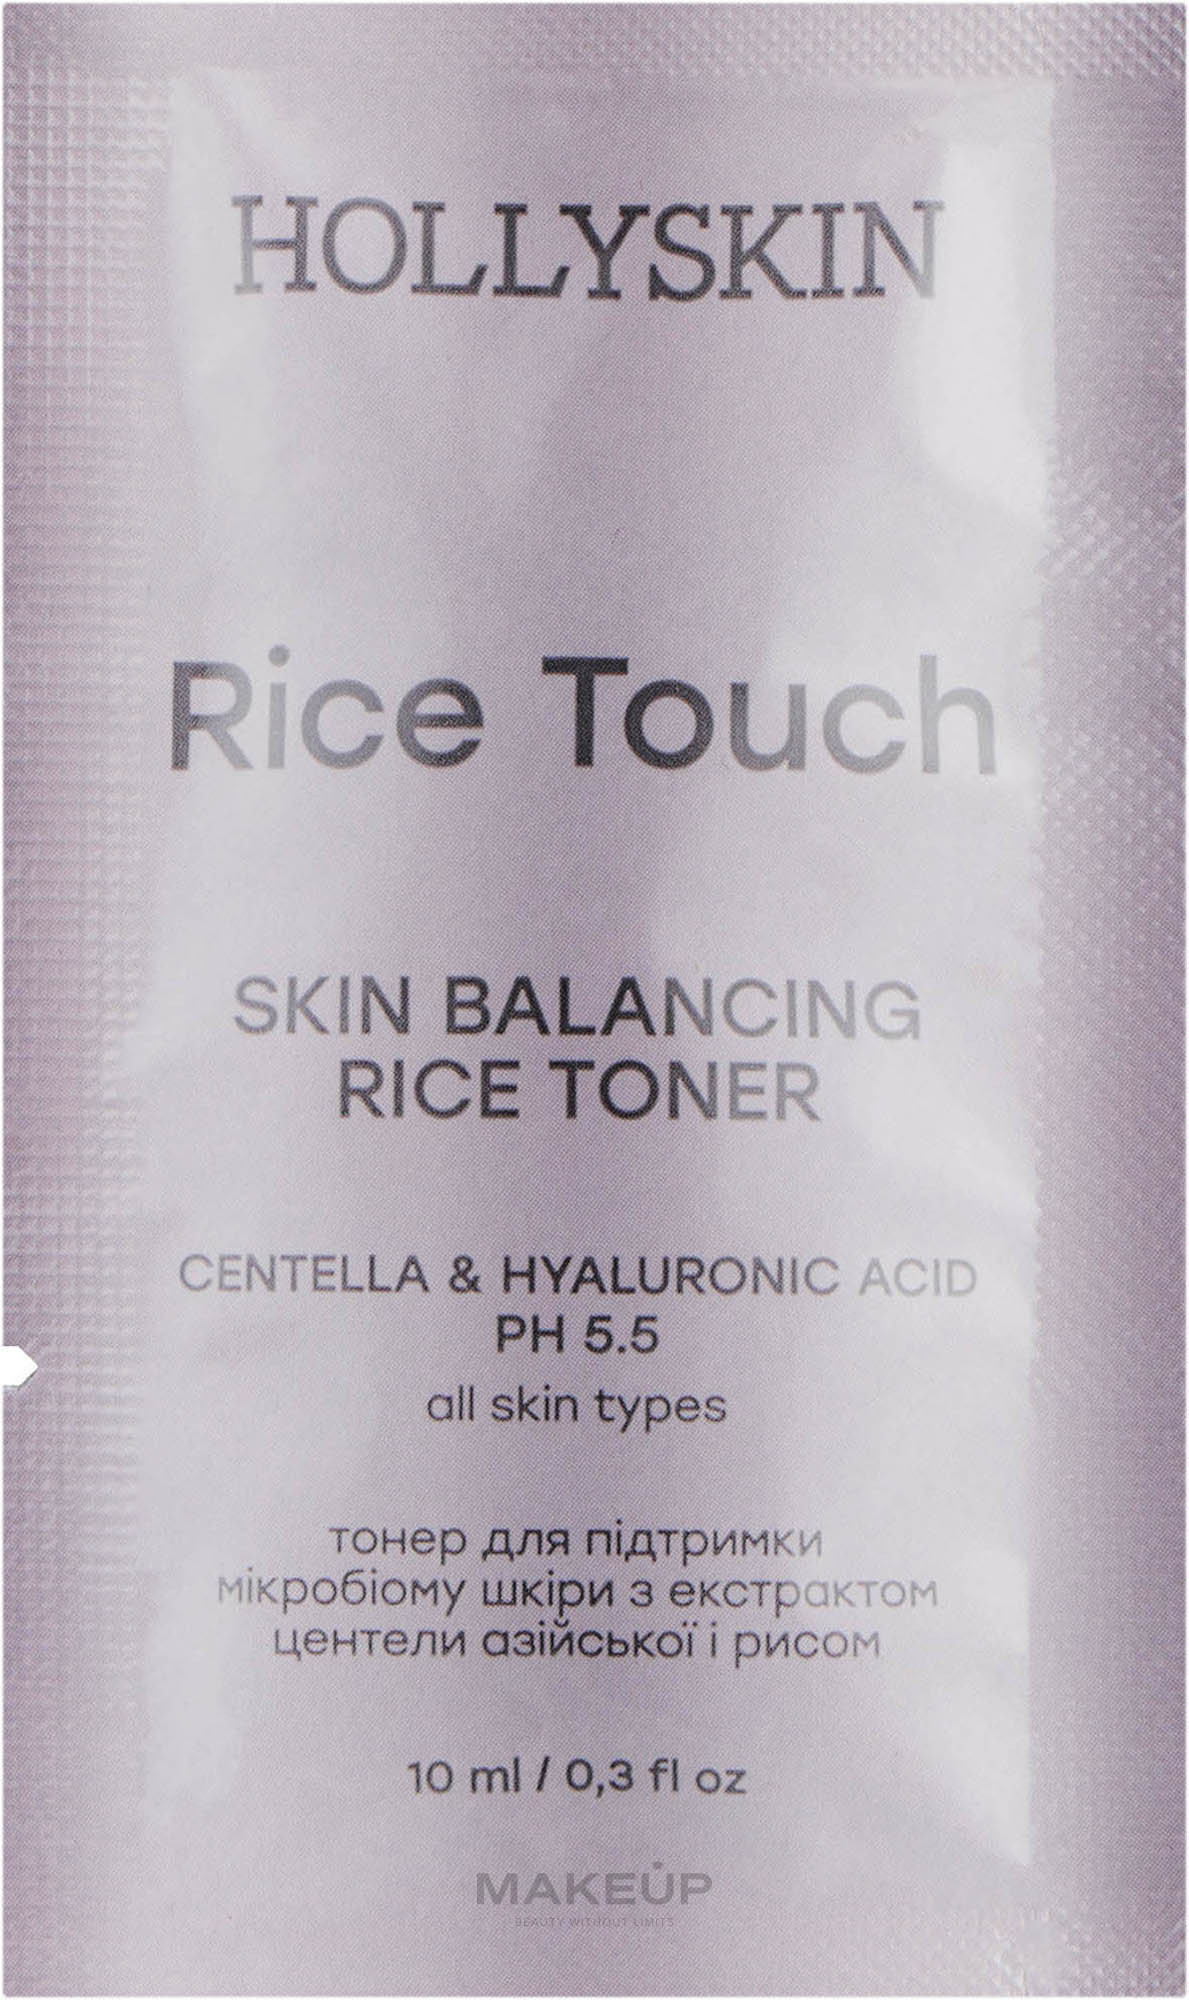 ПОДАРУНОК! Тонер для підтримки мікробіому шкіри з екстрактом центели азійської і рисом - Hollyskin Rice Touch — фото 10ml